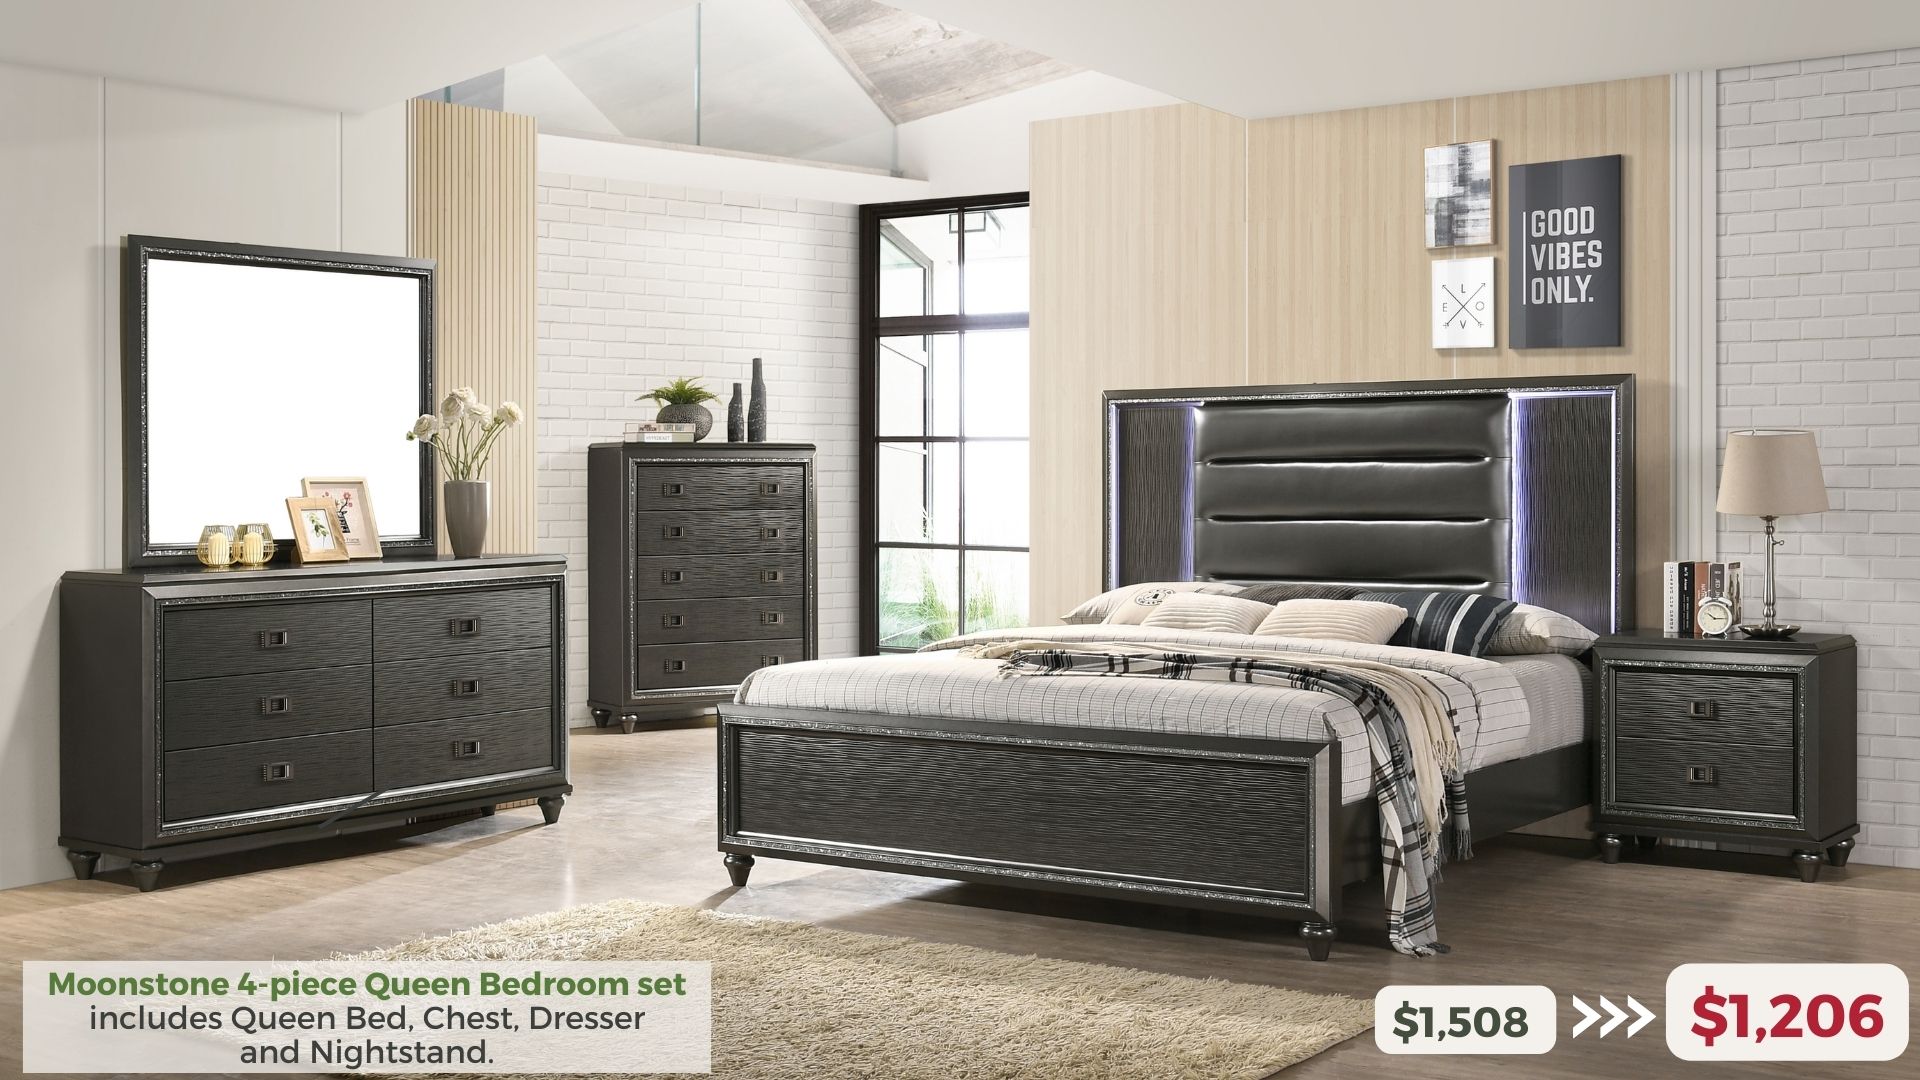 Moonstone 4-piece Queen Bedroom Set includes Queen Bed, Chest, Dresser and Nightstand. $1,206